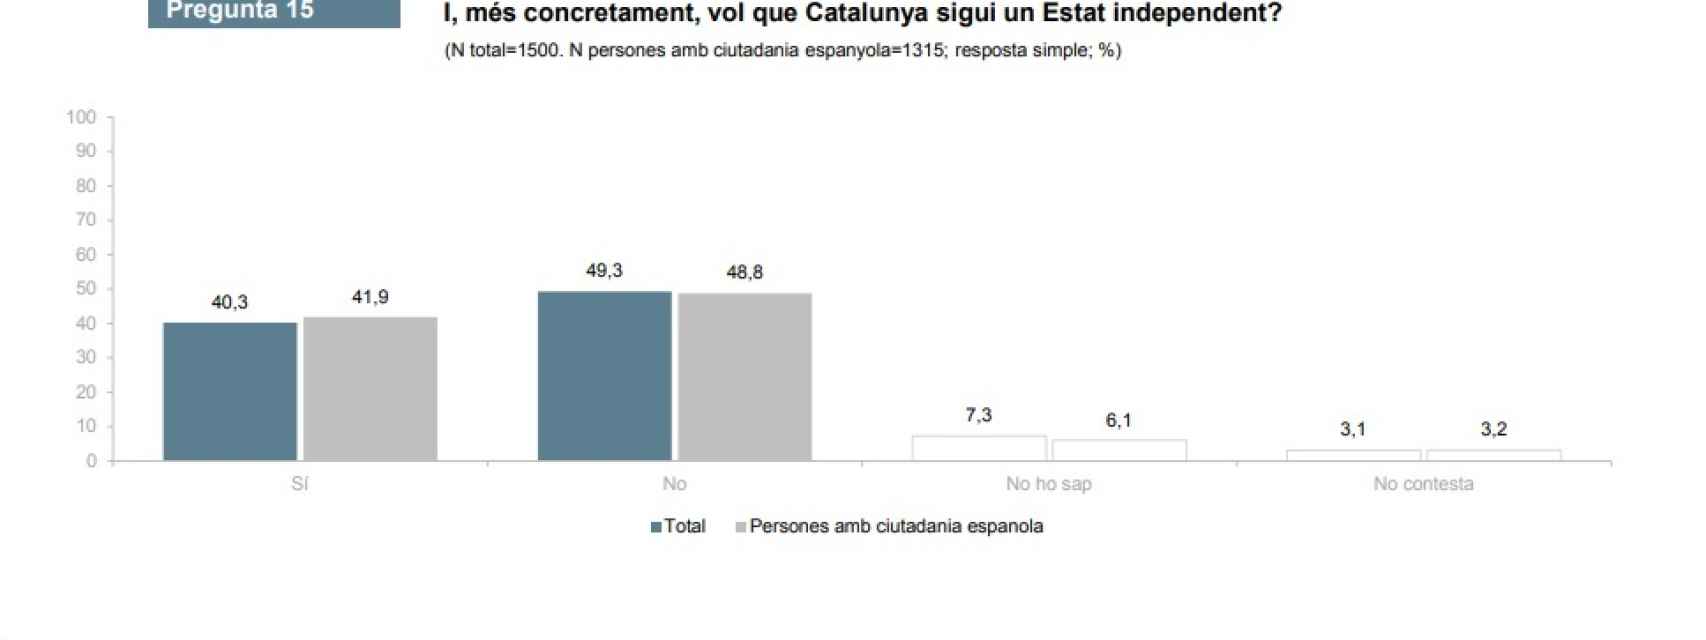 ¿Quiere que Cataluña sea un Estado independiente?